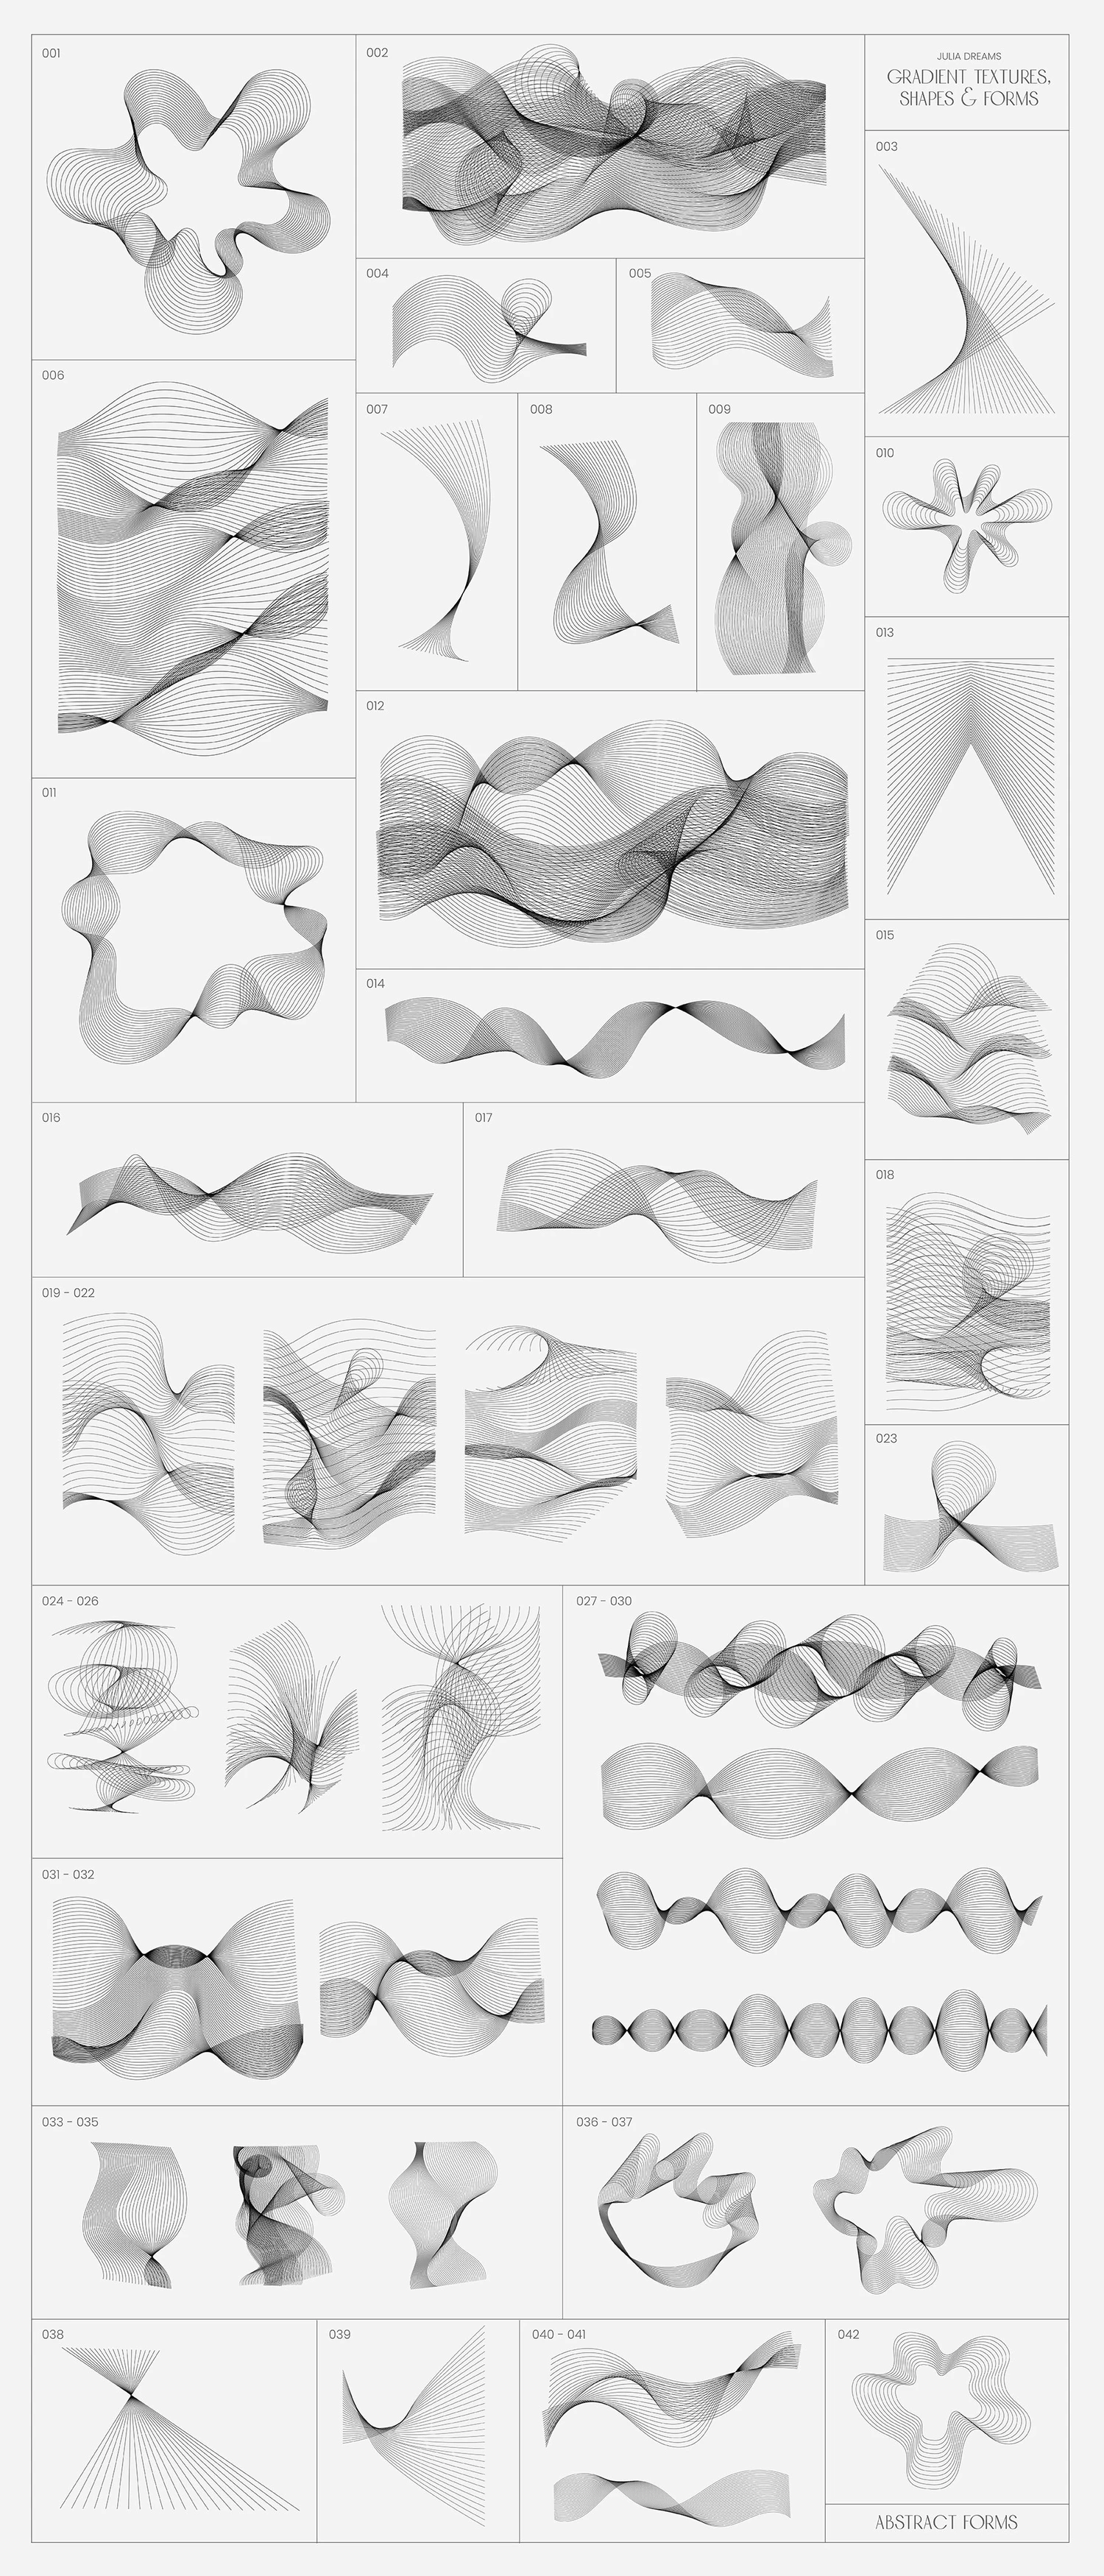 5263 470+渐变色纹理图片线条形状3D对象艺术图形素材集合包 Gradient Textures Shapes 3D Objects@GOOODME.COM